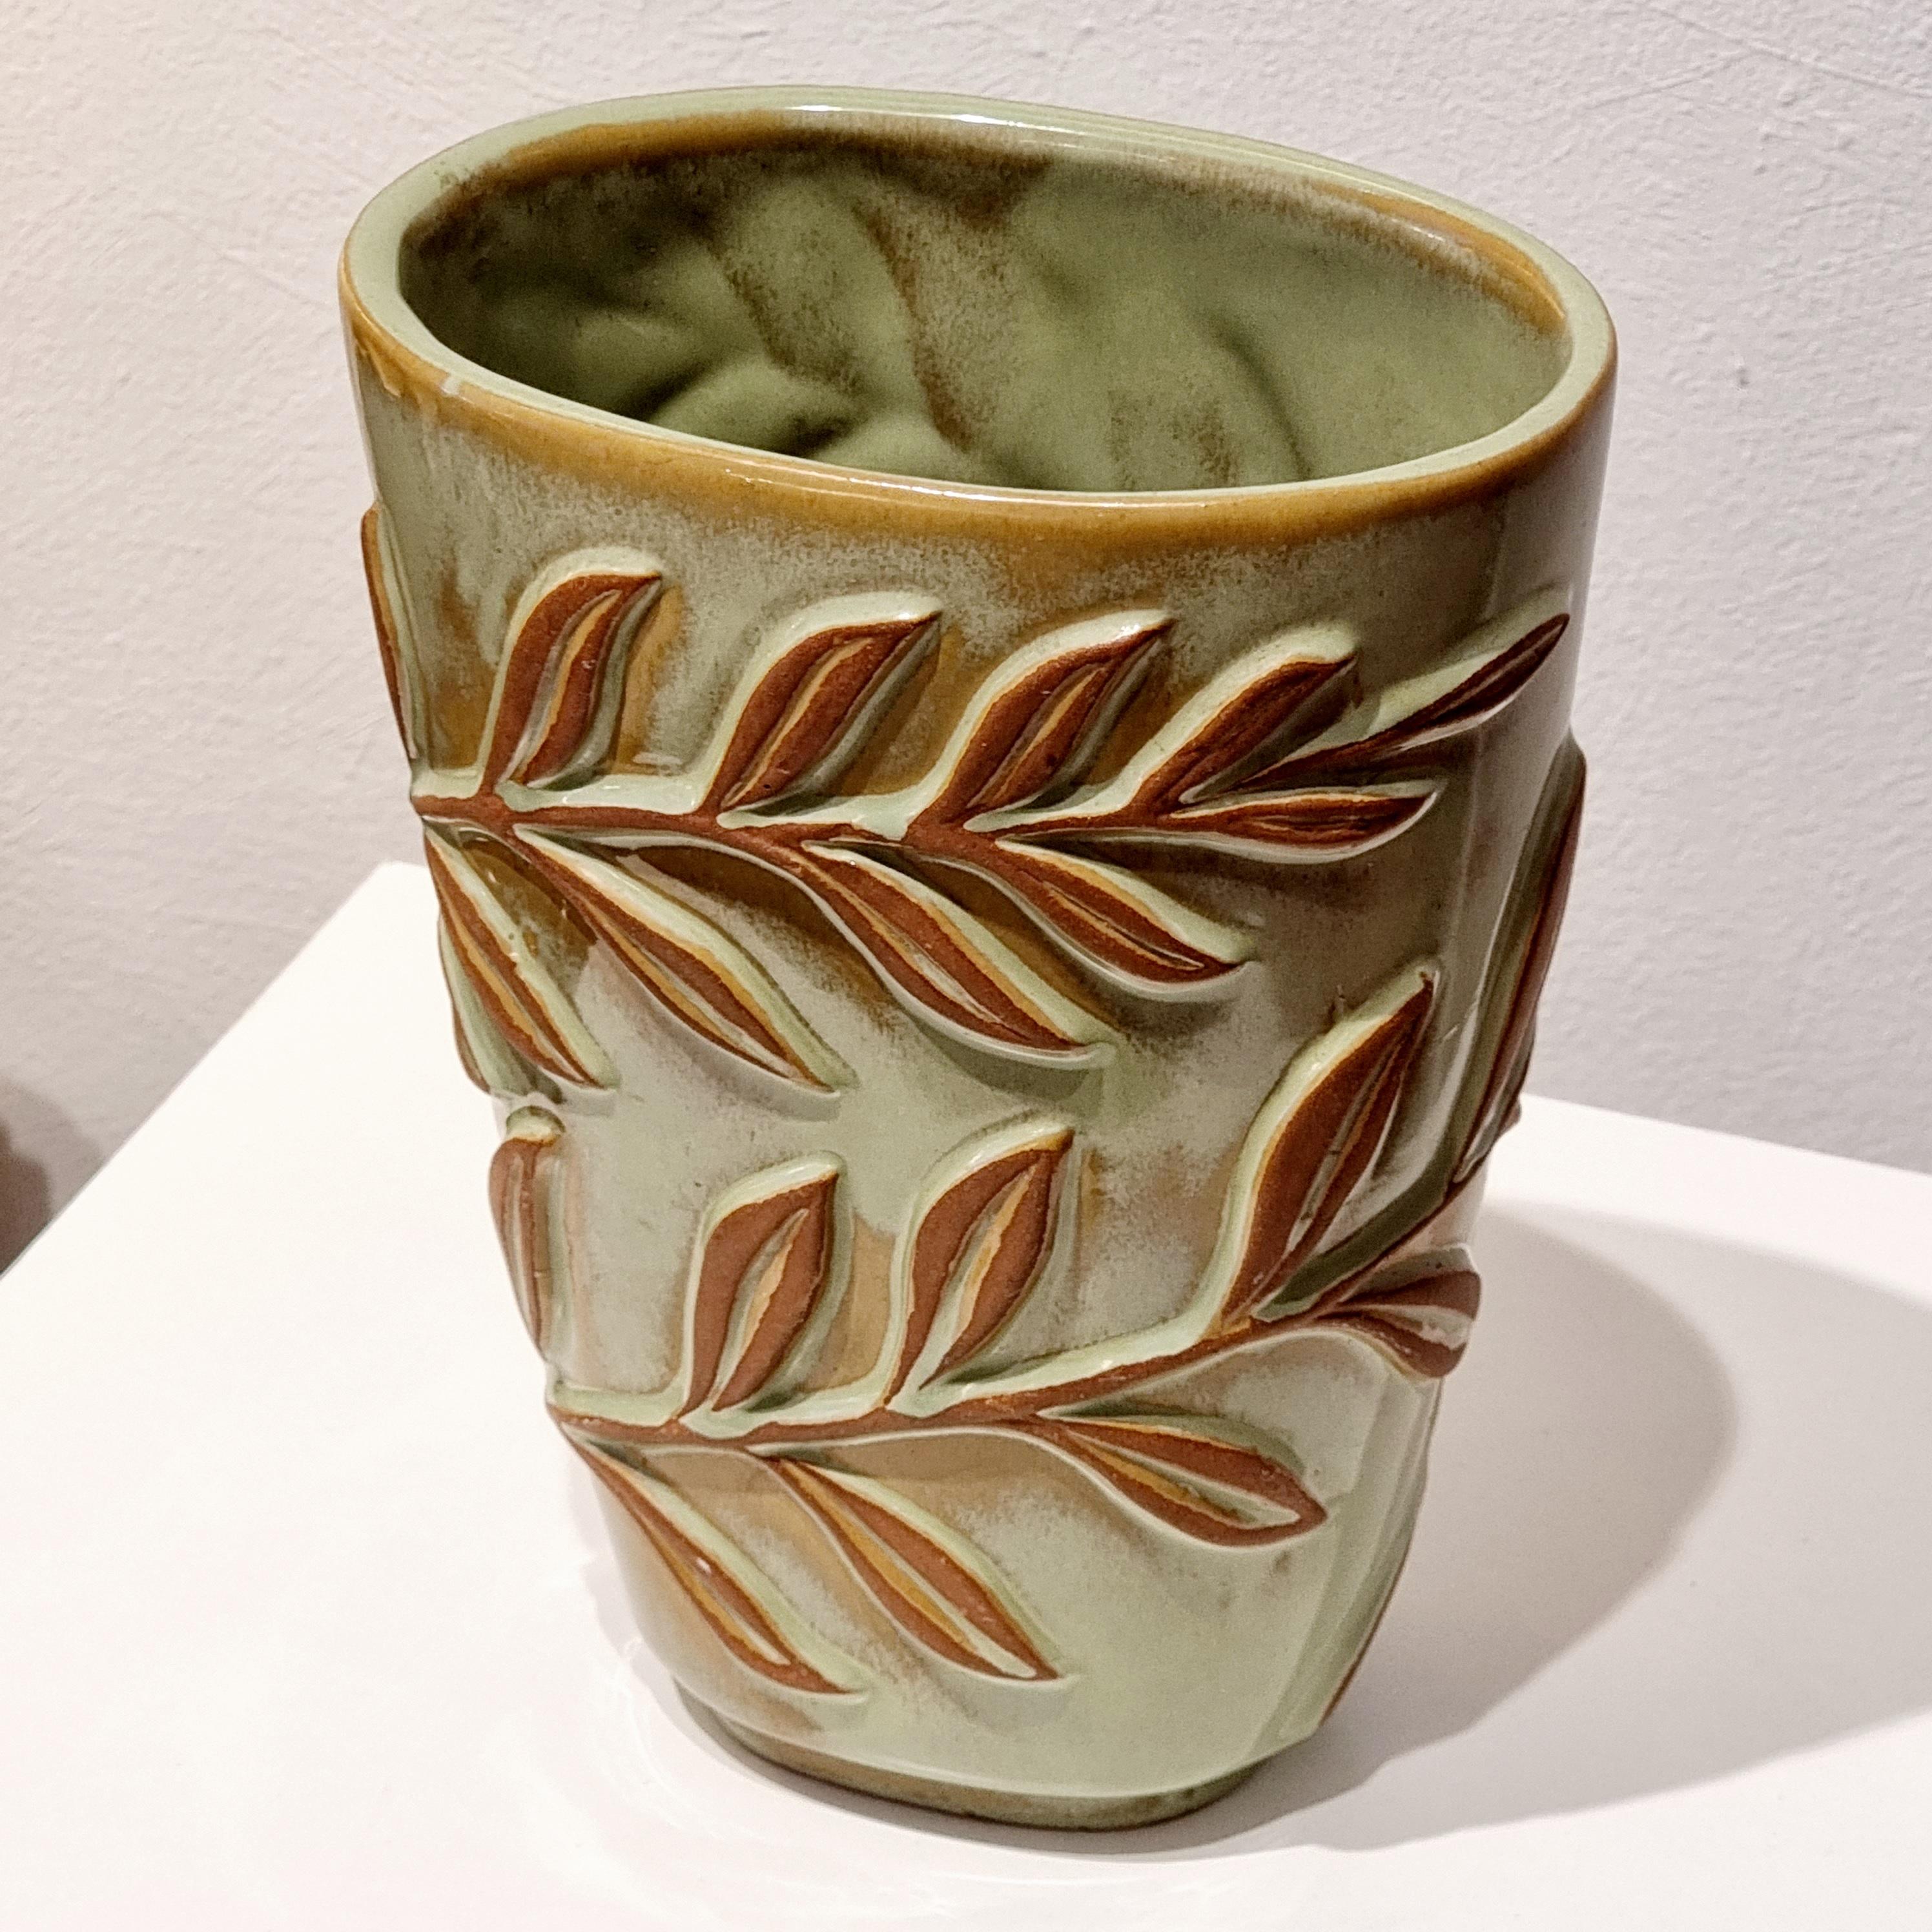 Une rare beauté de Vicke Lindstrand pour Upsala-Ekeby, vase modèle 409 avec décor de feuilles. 

Marqué : EKEBY, 409, V.L.A.

En bon état, petits signes d'âge et d'usure. Le fond présente une petite bosse.